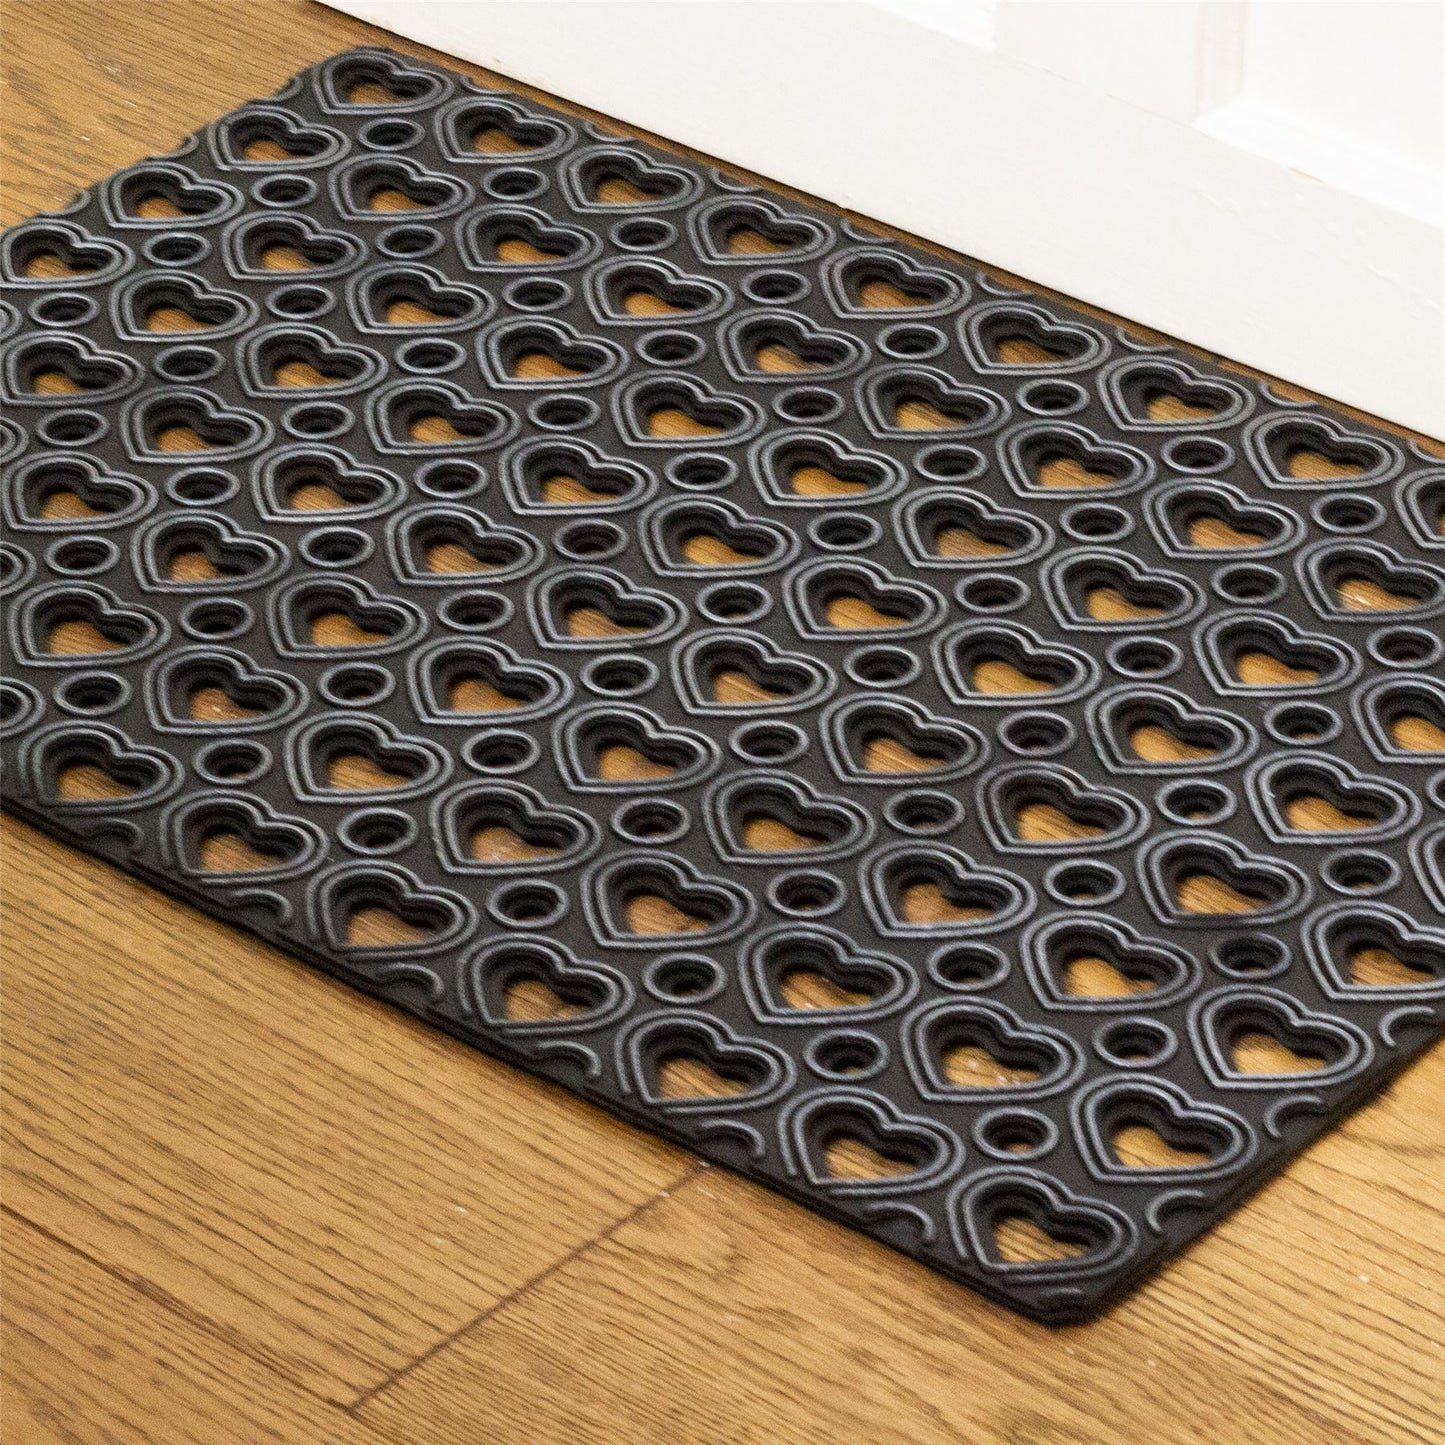 Hearts Rubber Doormat | Outdoor Heavy Duty Non-Slip Scraper Doormat - 40x60cm